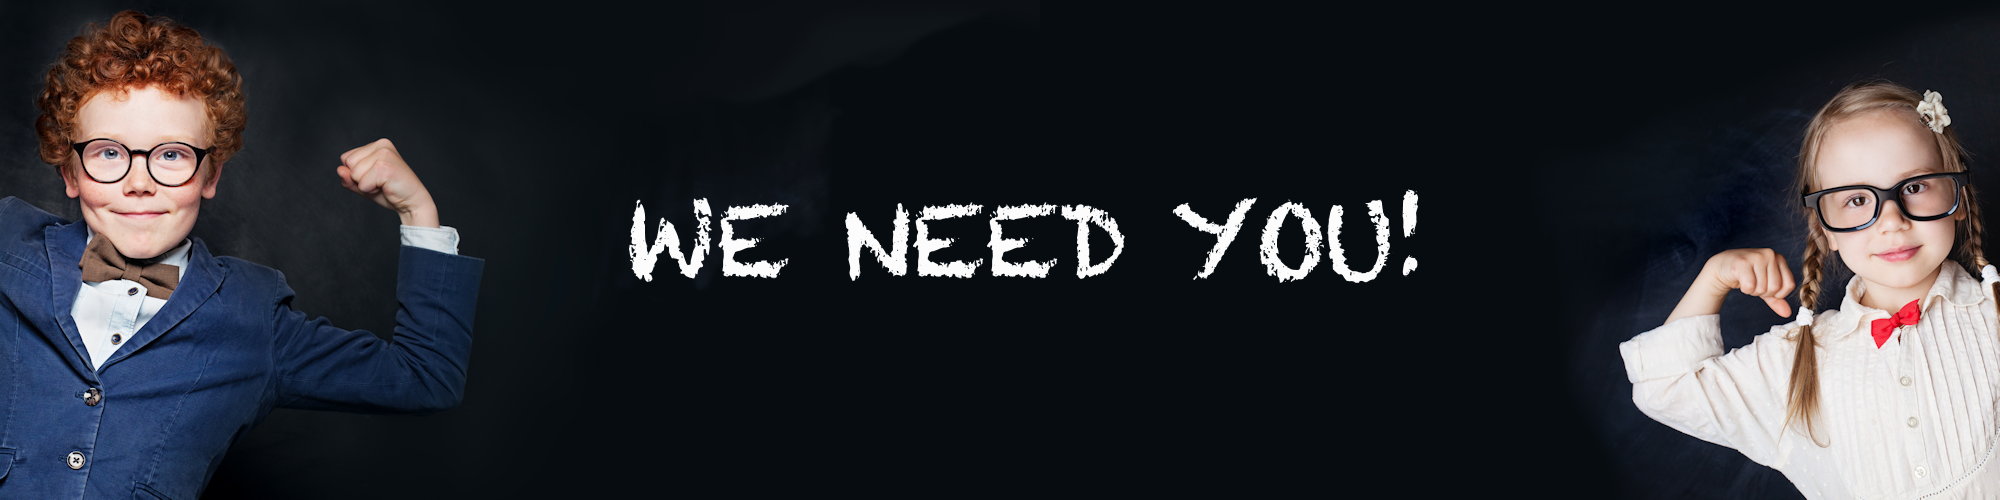 We Need You!